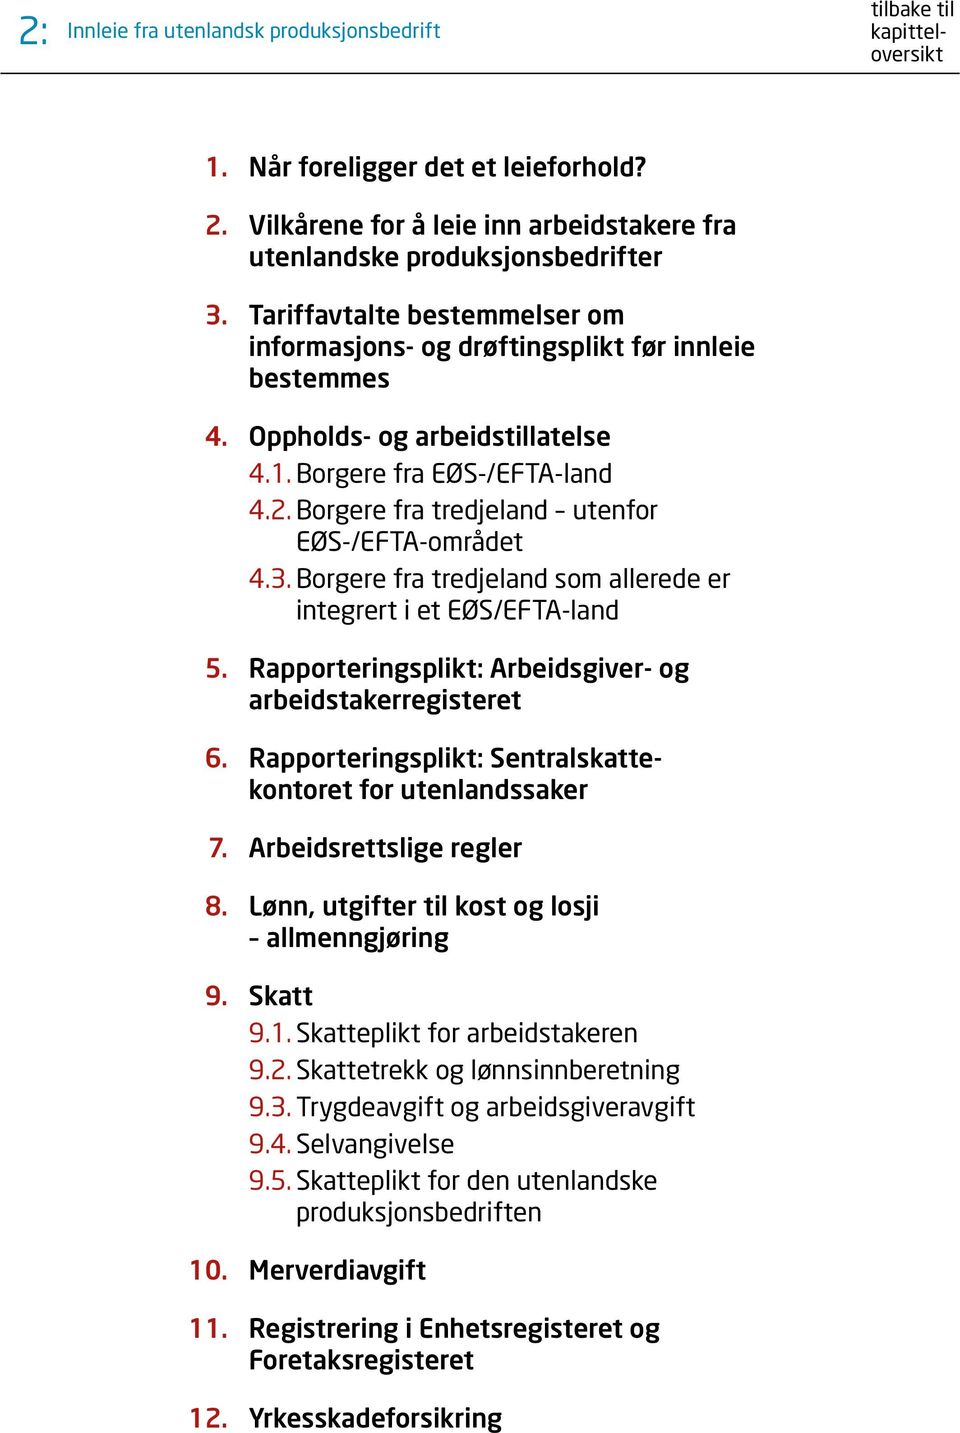 SJEKKLISTE FOR BRUK AV UTENLANDSK ARBEIDSKRAFT - PDF Gratis nedlasting